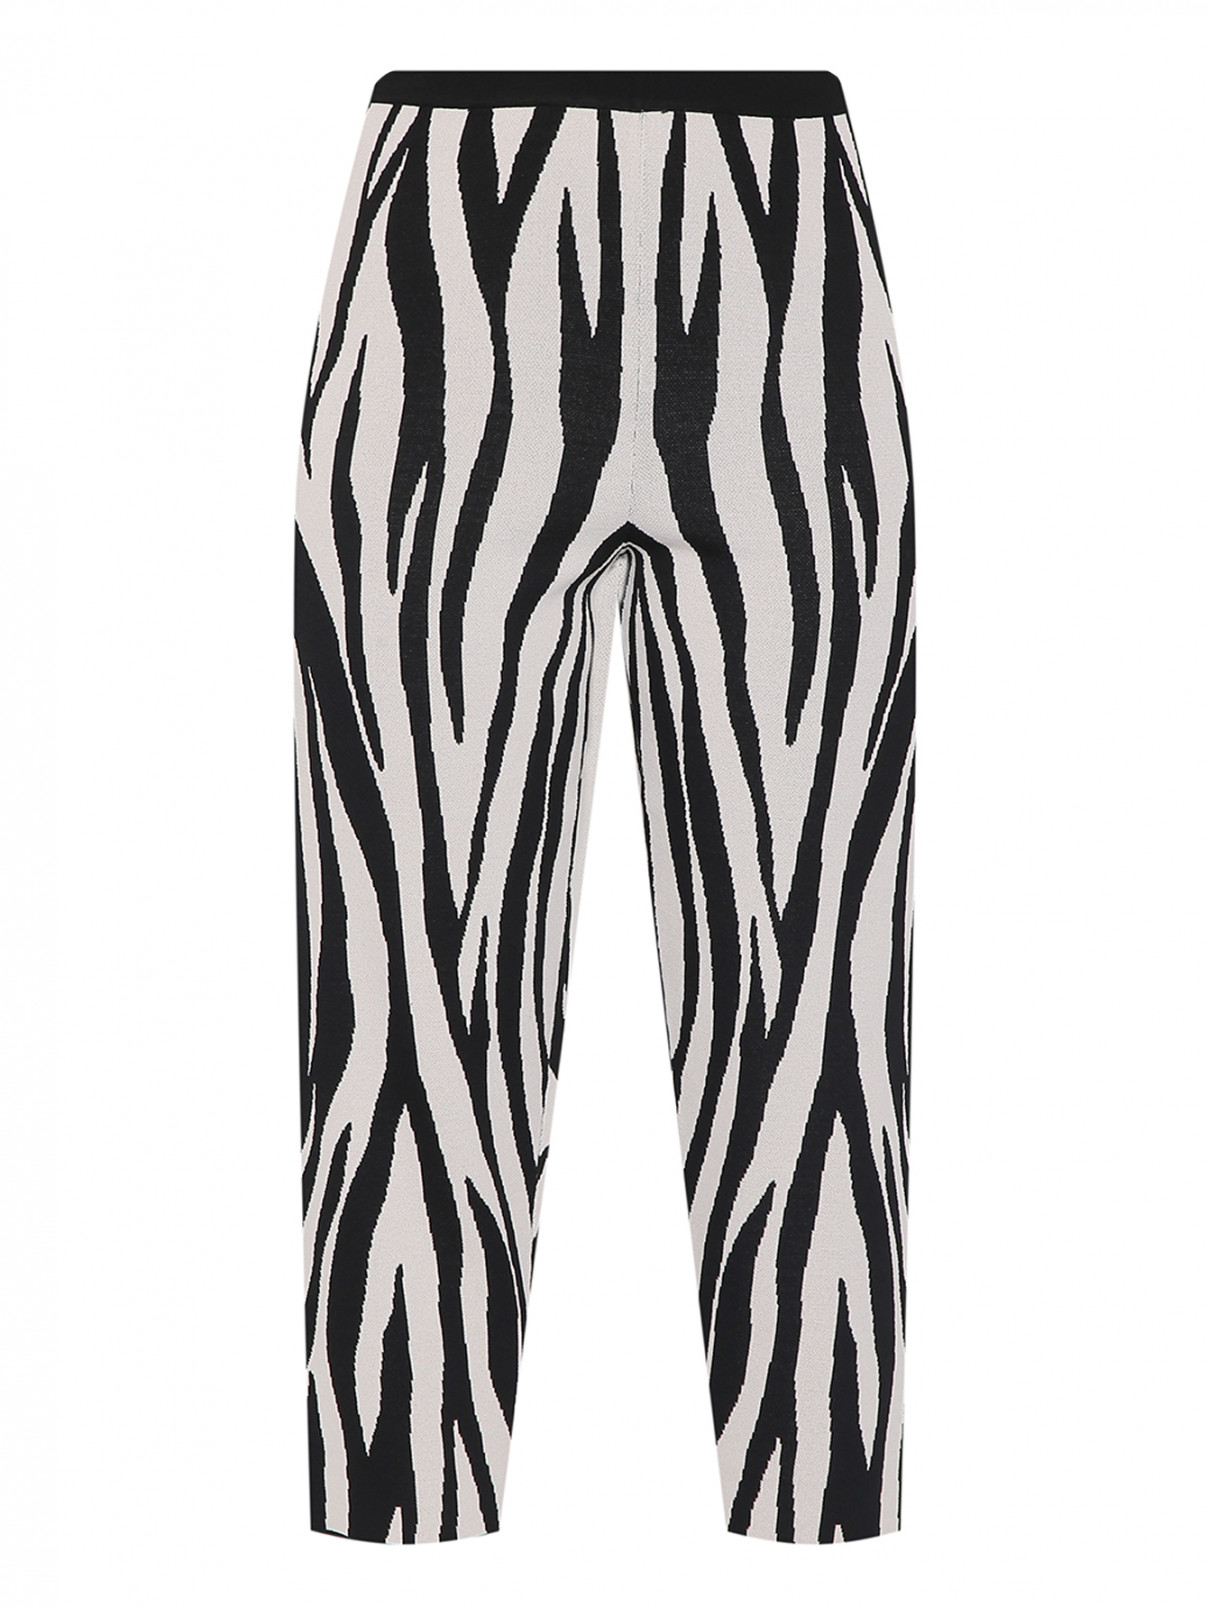 Трикотажные брюки прямого кроя на резинке Marina Rinaldi  –  Общий вид  – Цвет:  Черный